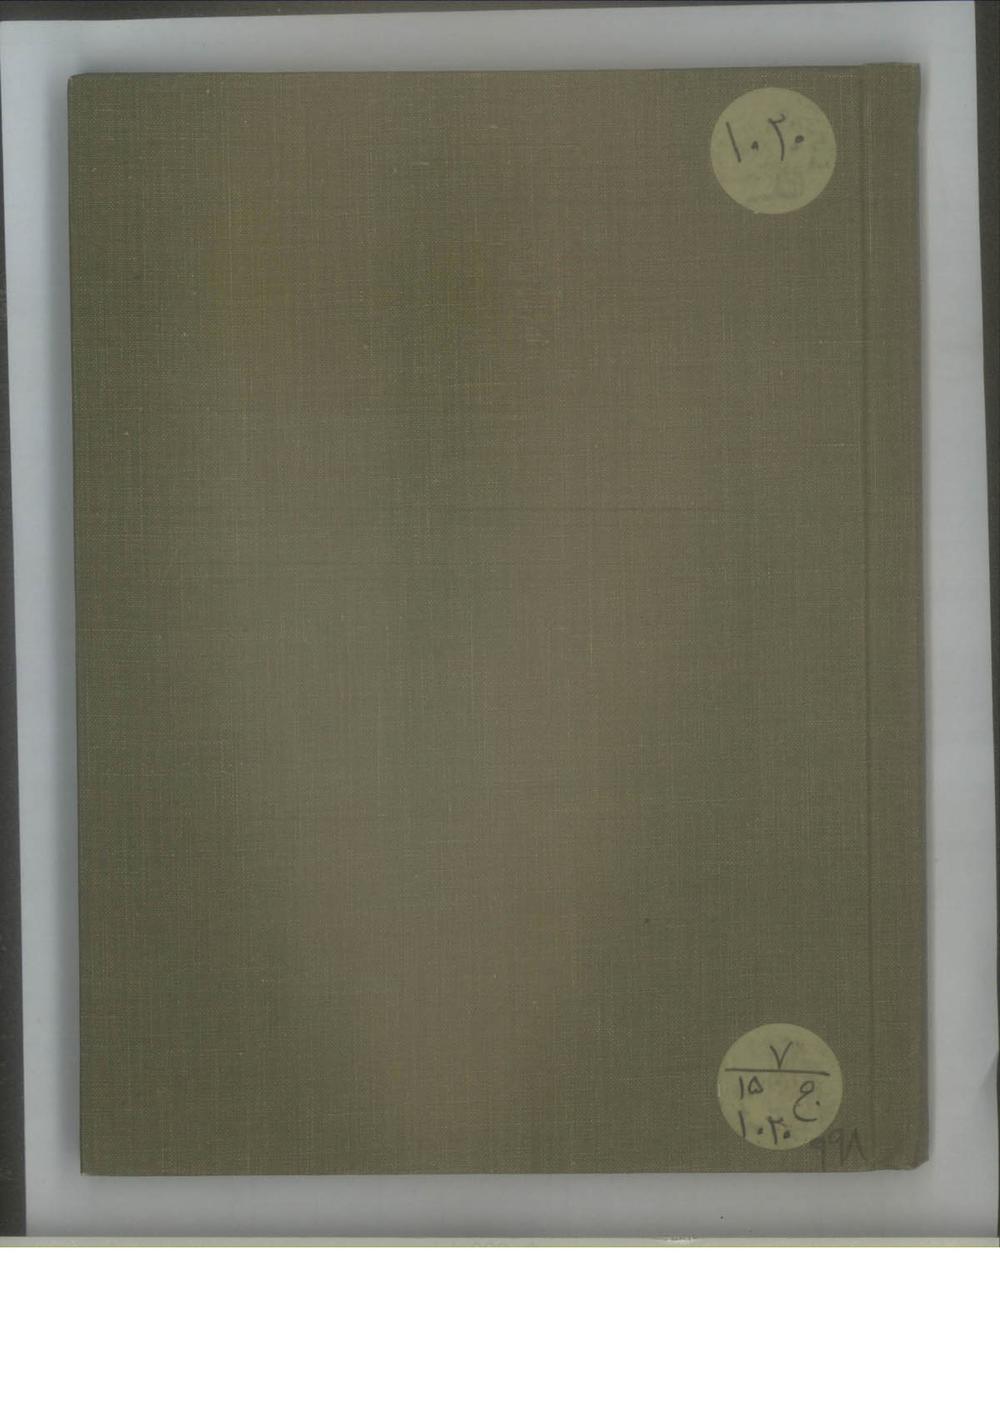 کتابچه اسامی صاحب منصبان و سربازان فوج در جزین با مواجب آنان در ماموریت سرحد مریوان برای منع عشایر جاف